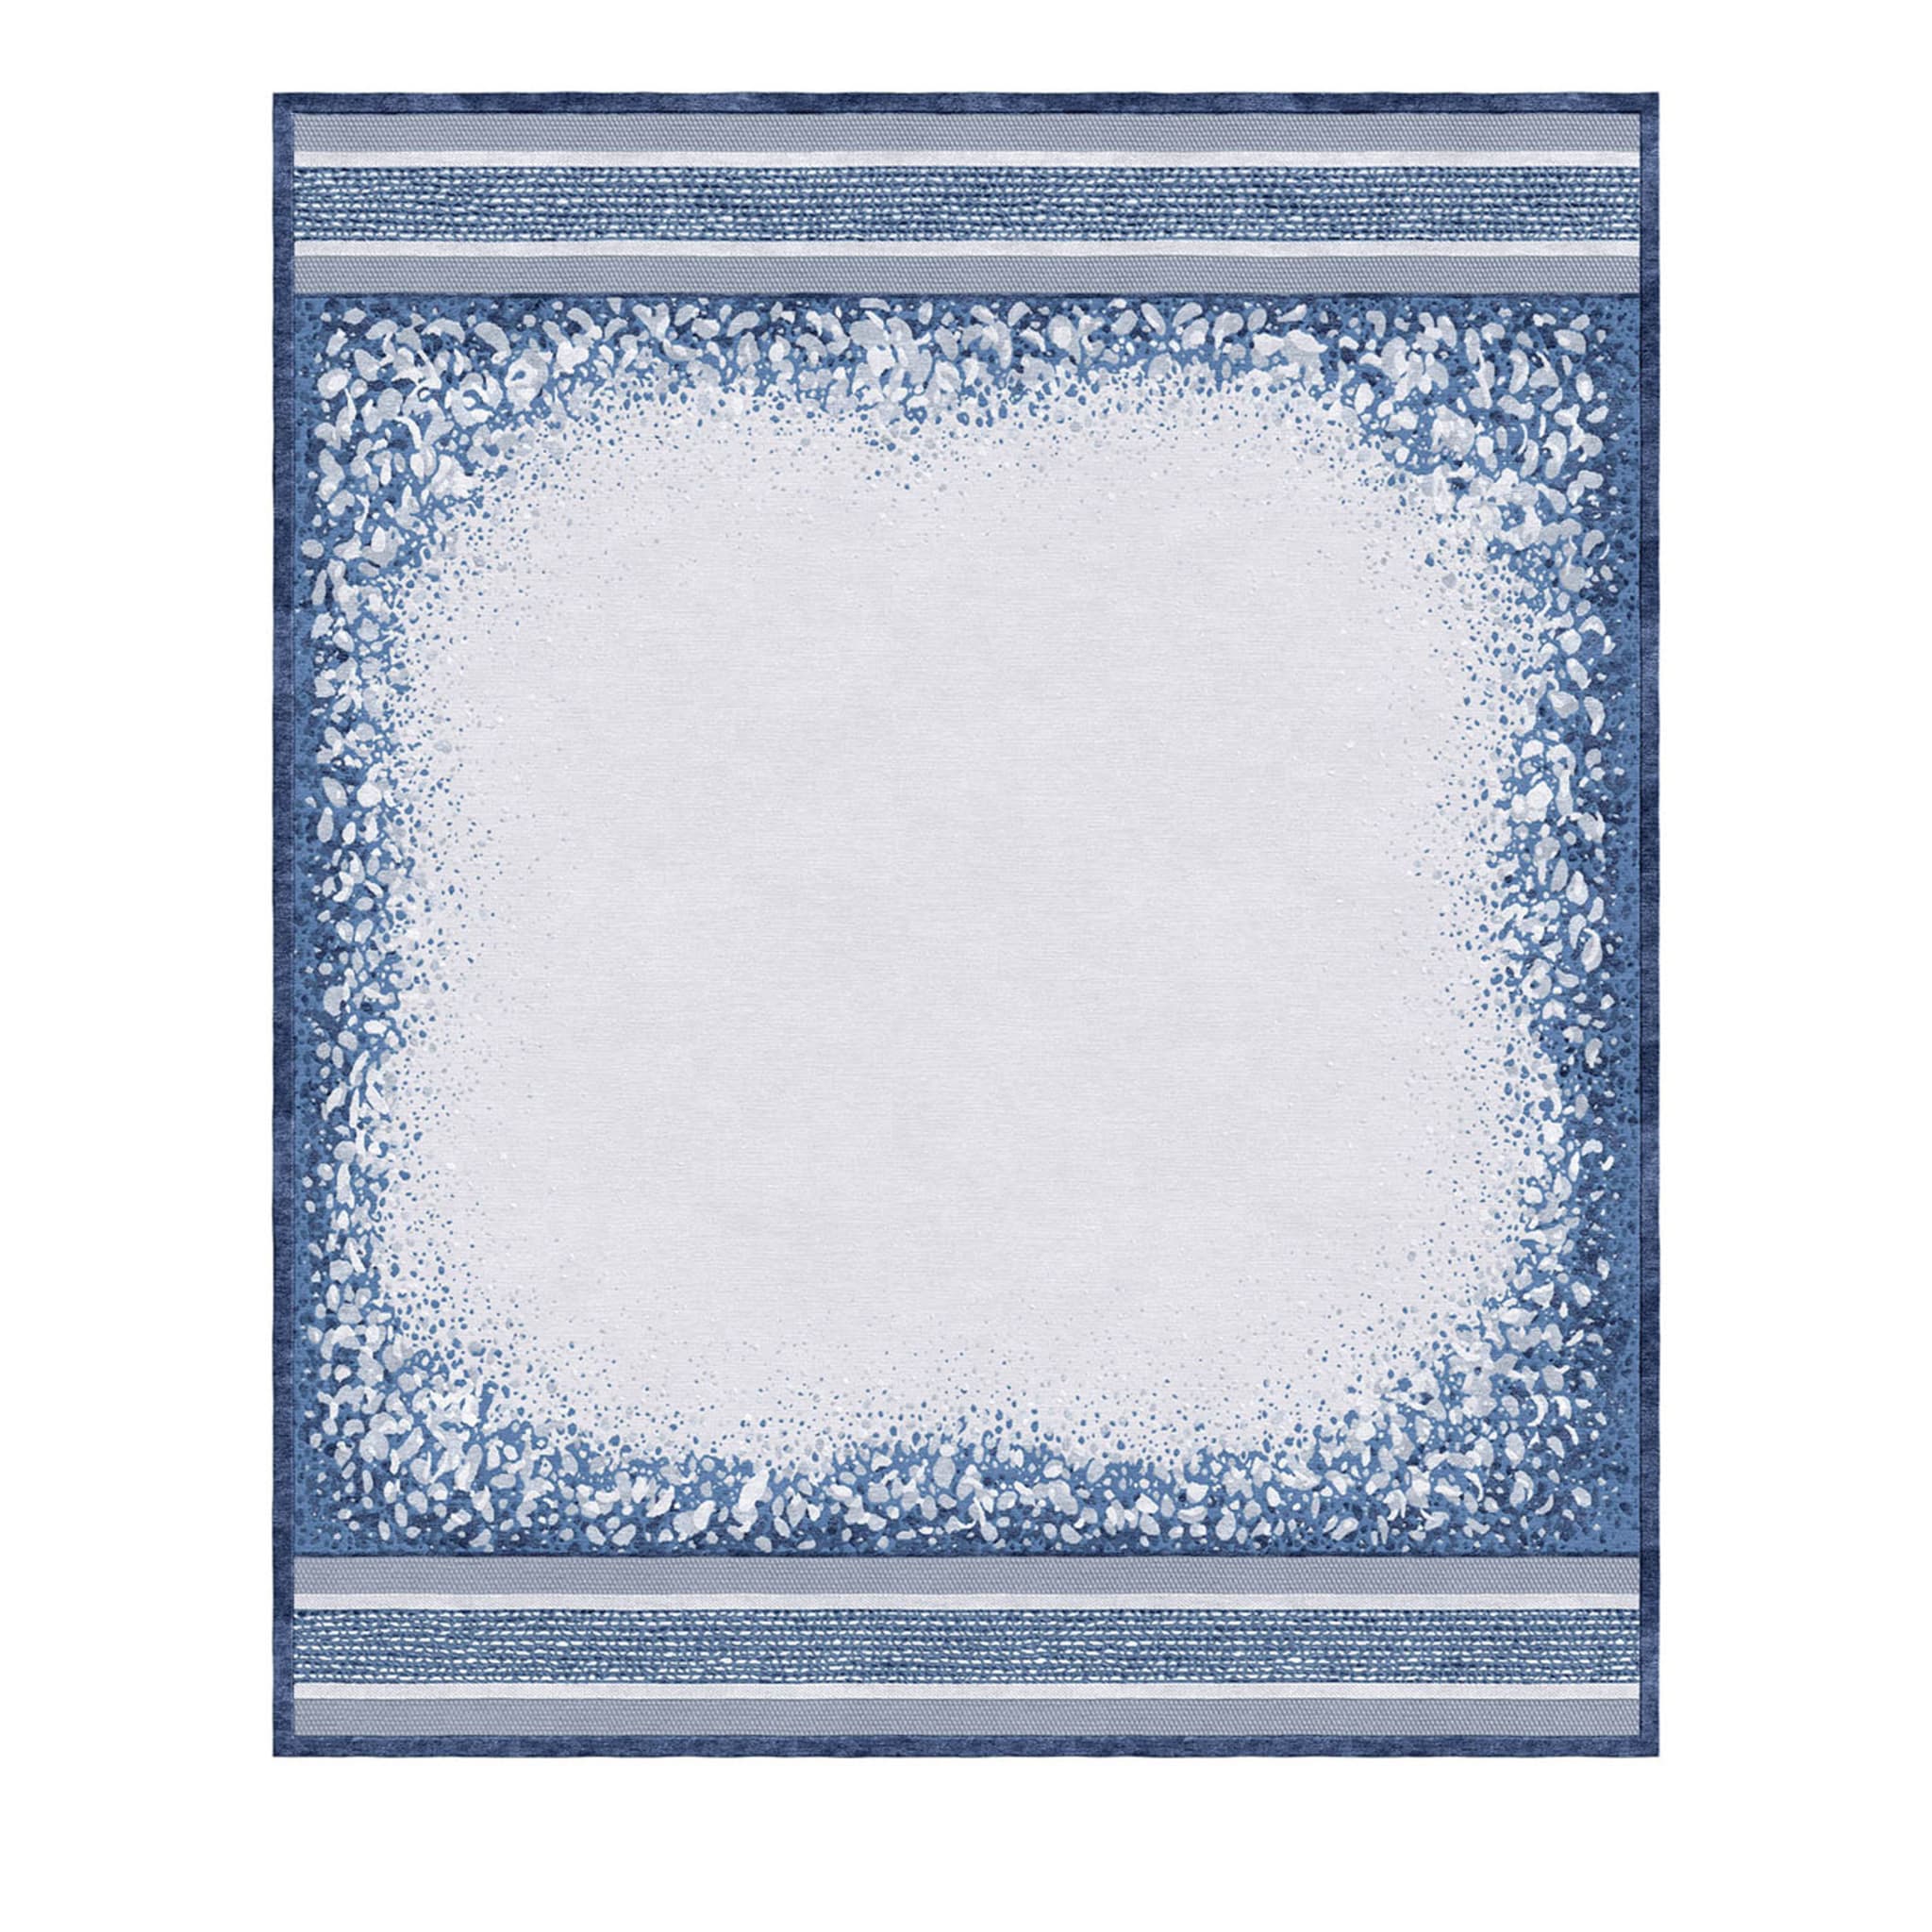 Tappeto Lia rettangolare blu e bianco - Vista principale